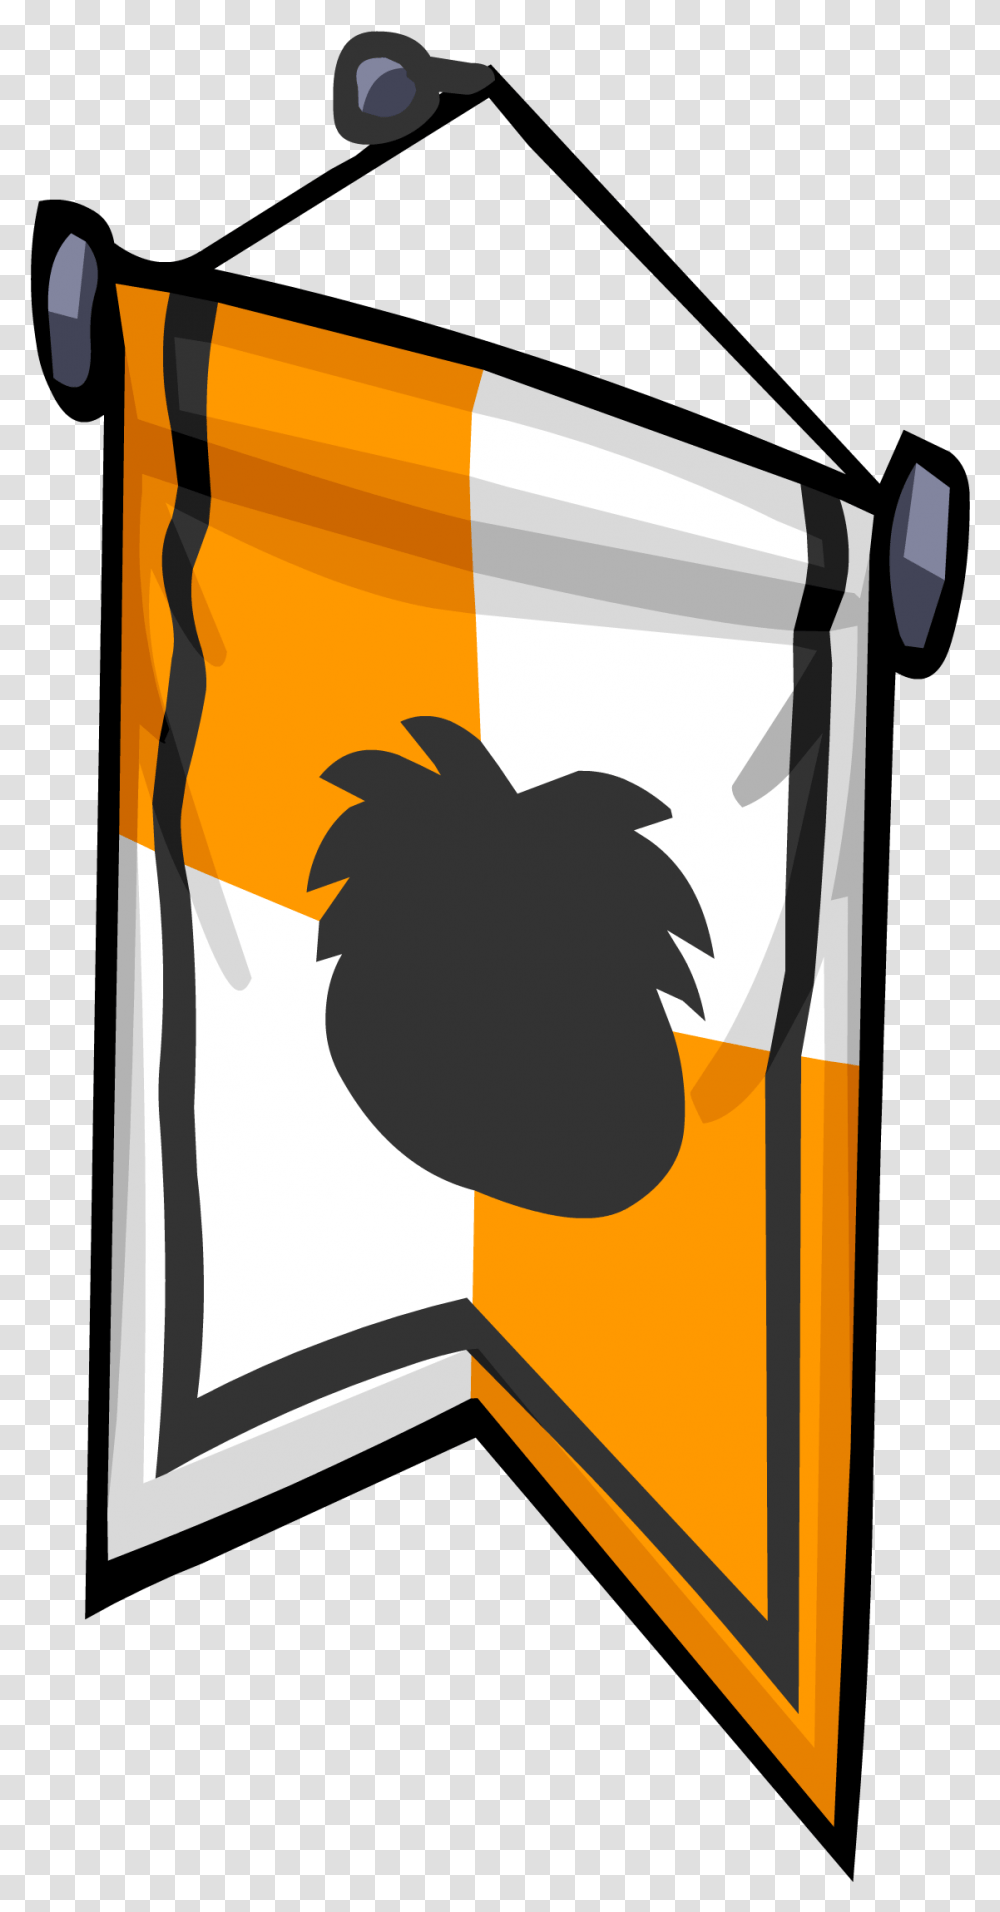 Download Hd Orange Banner Sprite 007 Image Vertical, Beverage, Drink, Bottle, Graphics Transparent Png